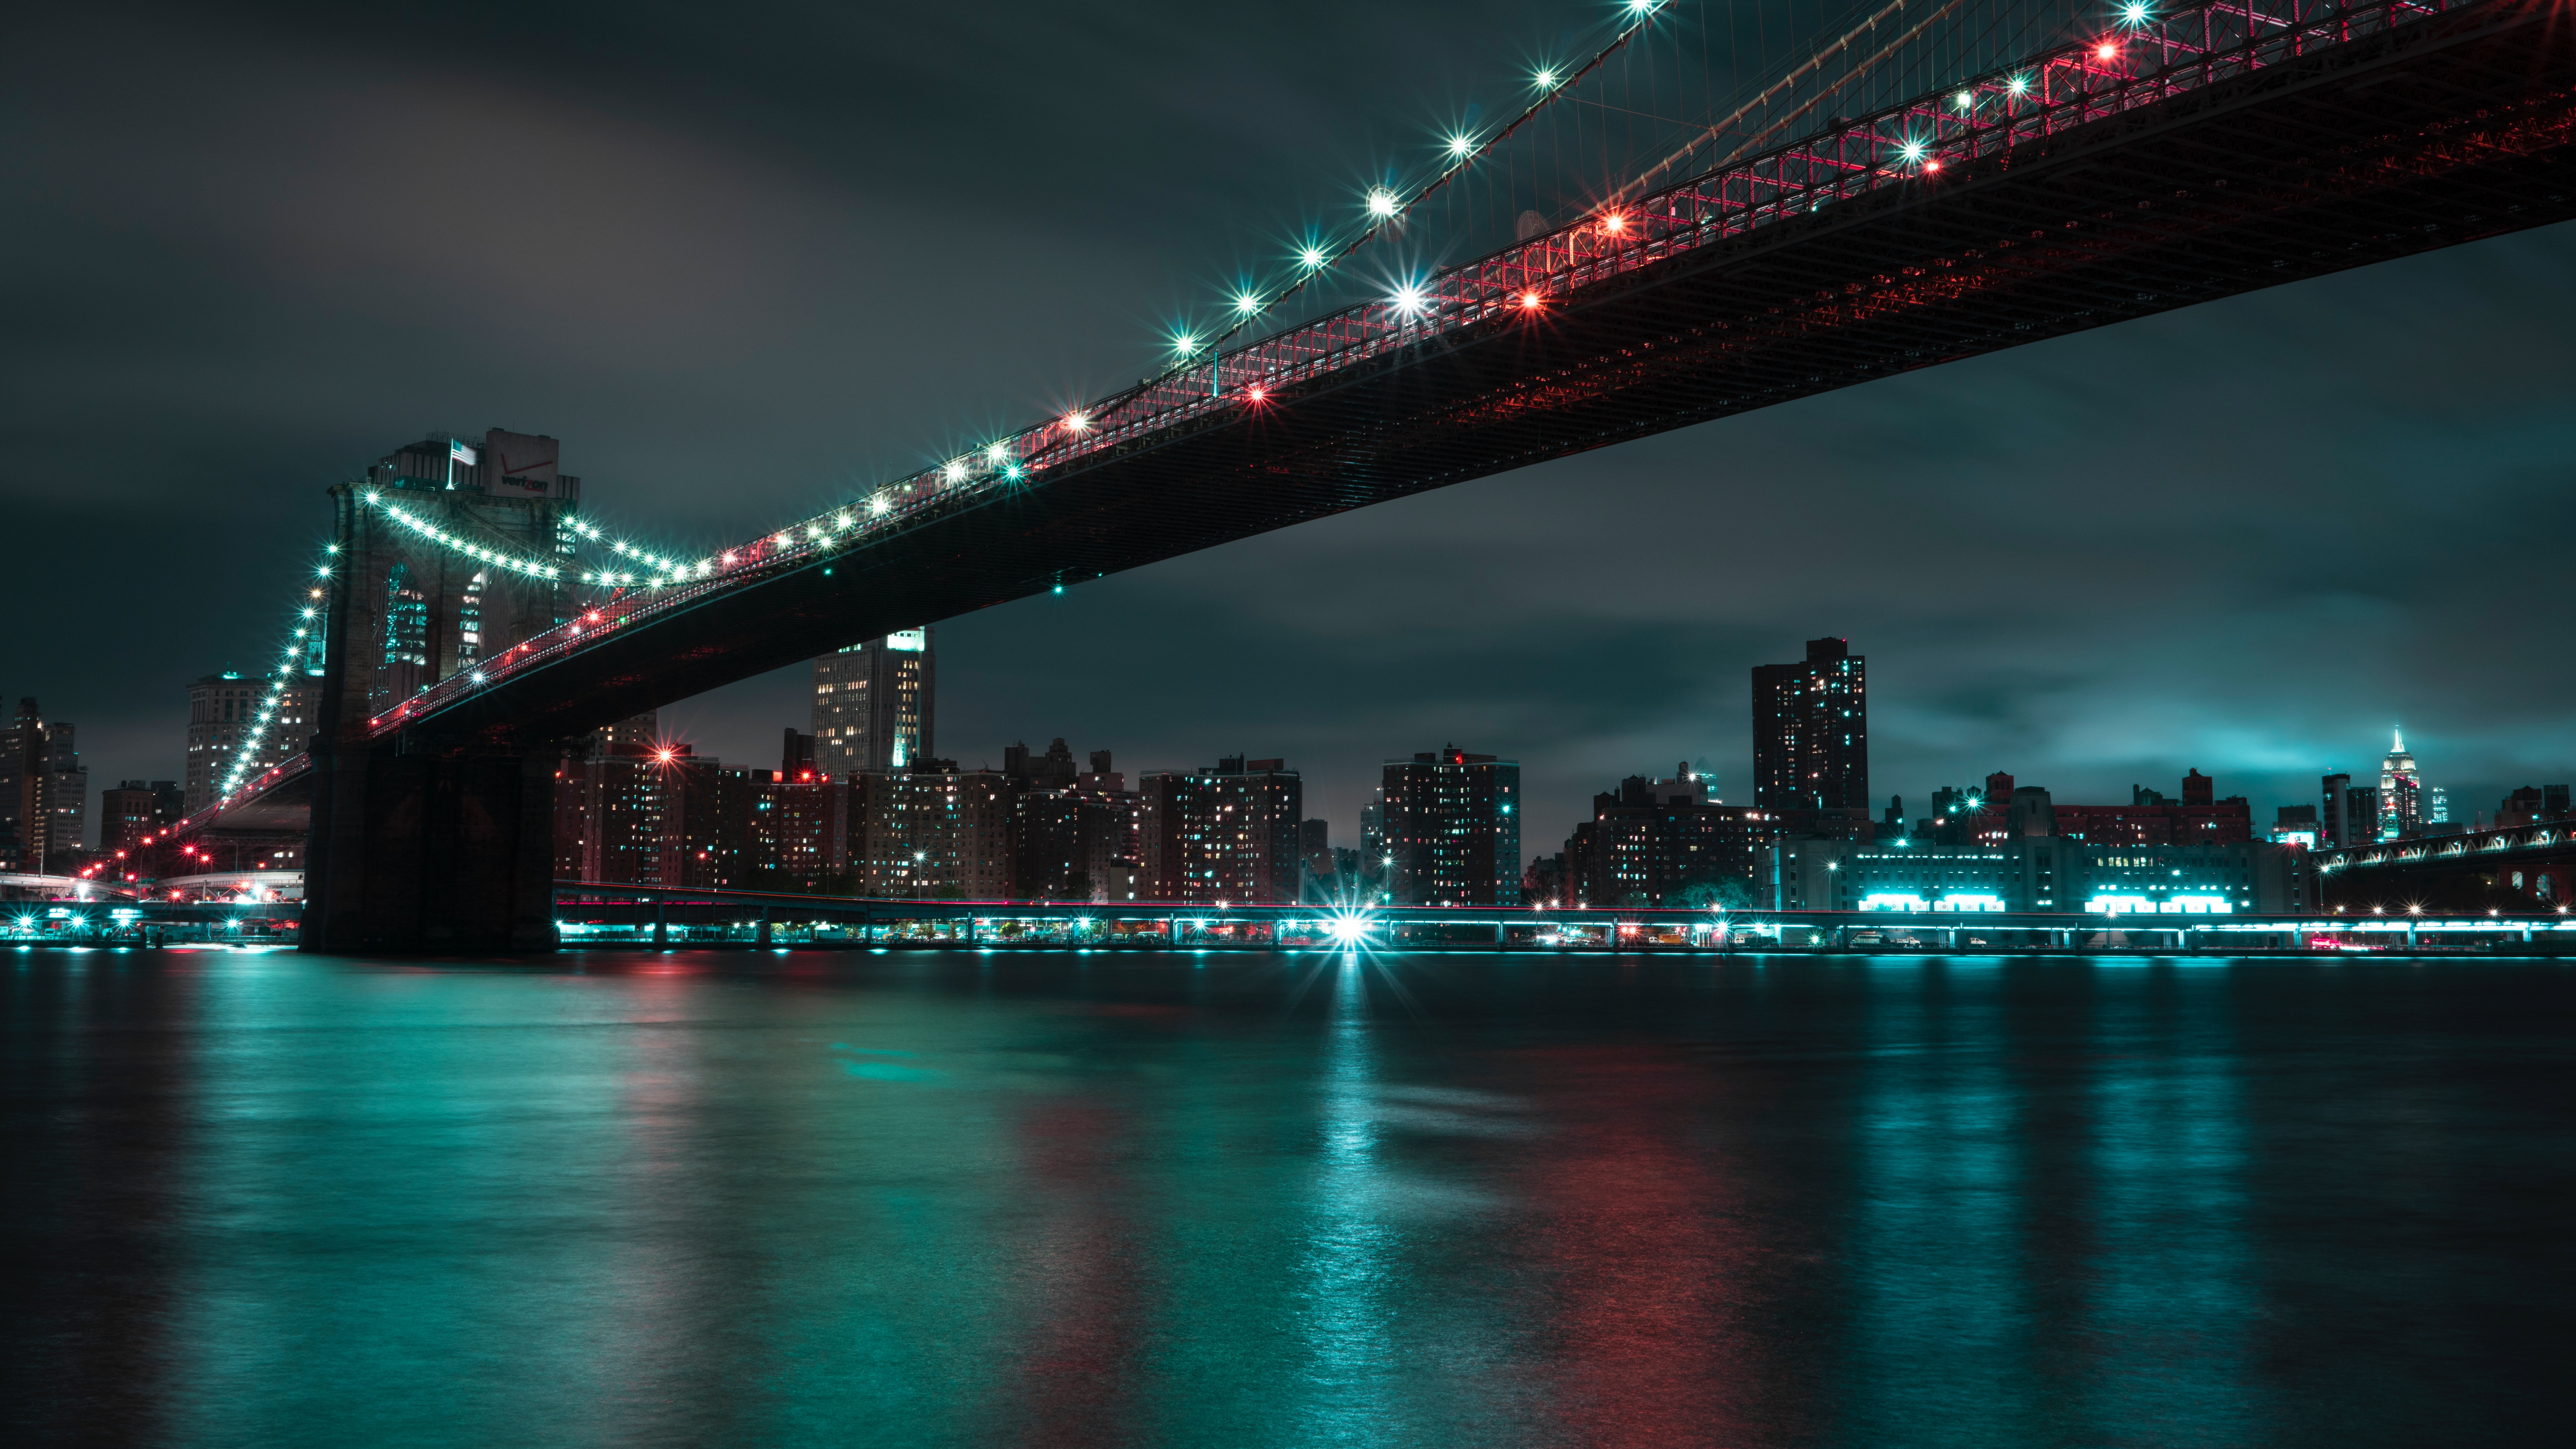 布鲁克林大桥, 城市景观, 城市, 红色的, 里程碑 壁纸 7680x4320 允许